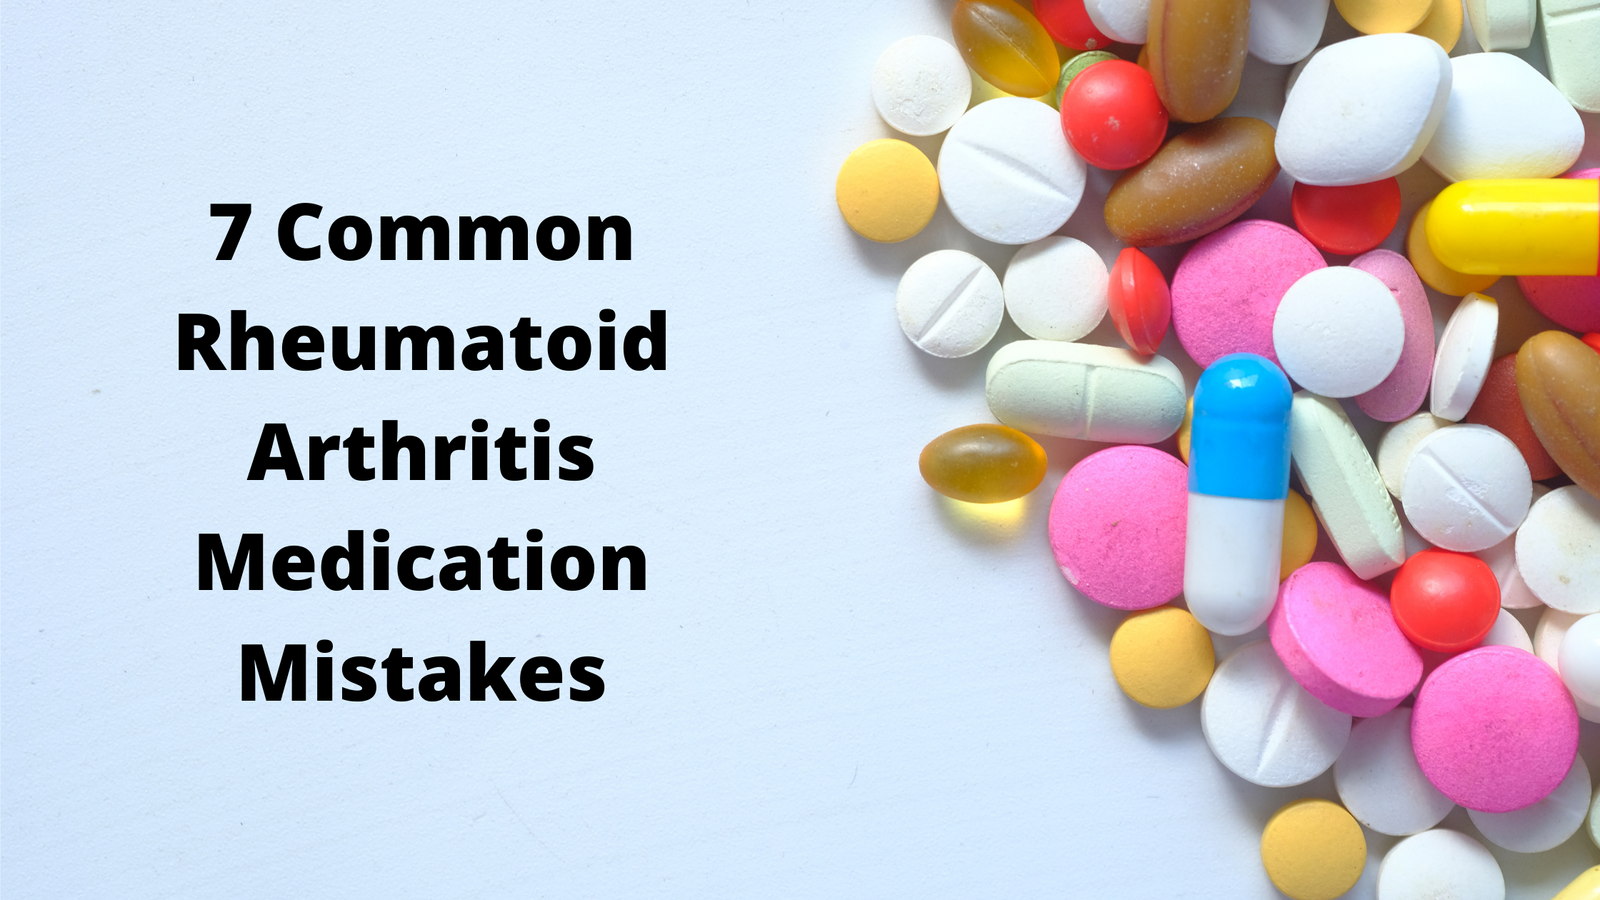 7 Common Rheumatoid Arthritis Medication Mistakes